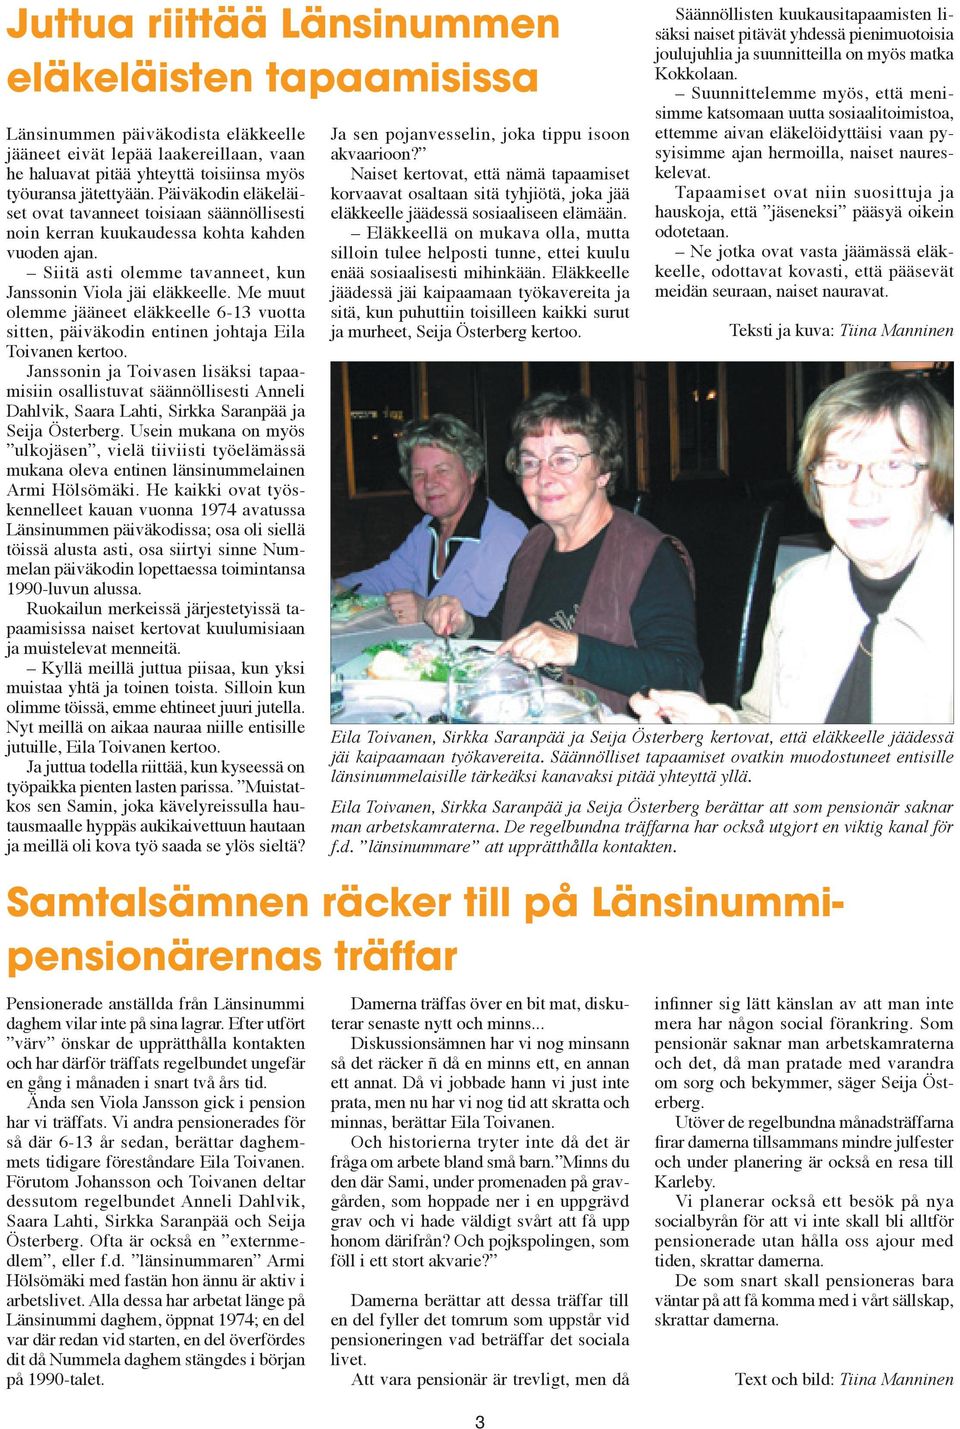 Me muut olemme jääneet eläkkeelle 6-13 vuotta sitten, päiväkodin entinen johtaja Eila Toivanen kertoo.